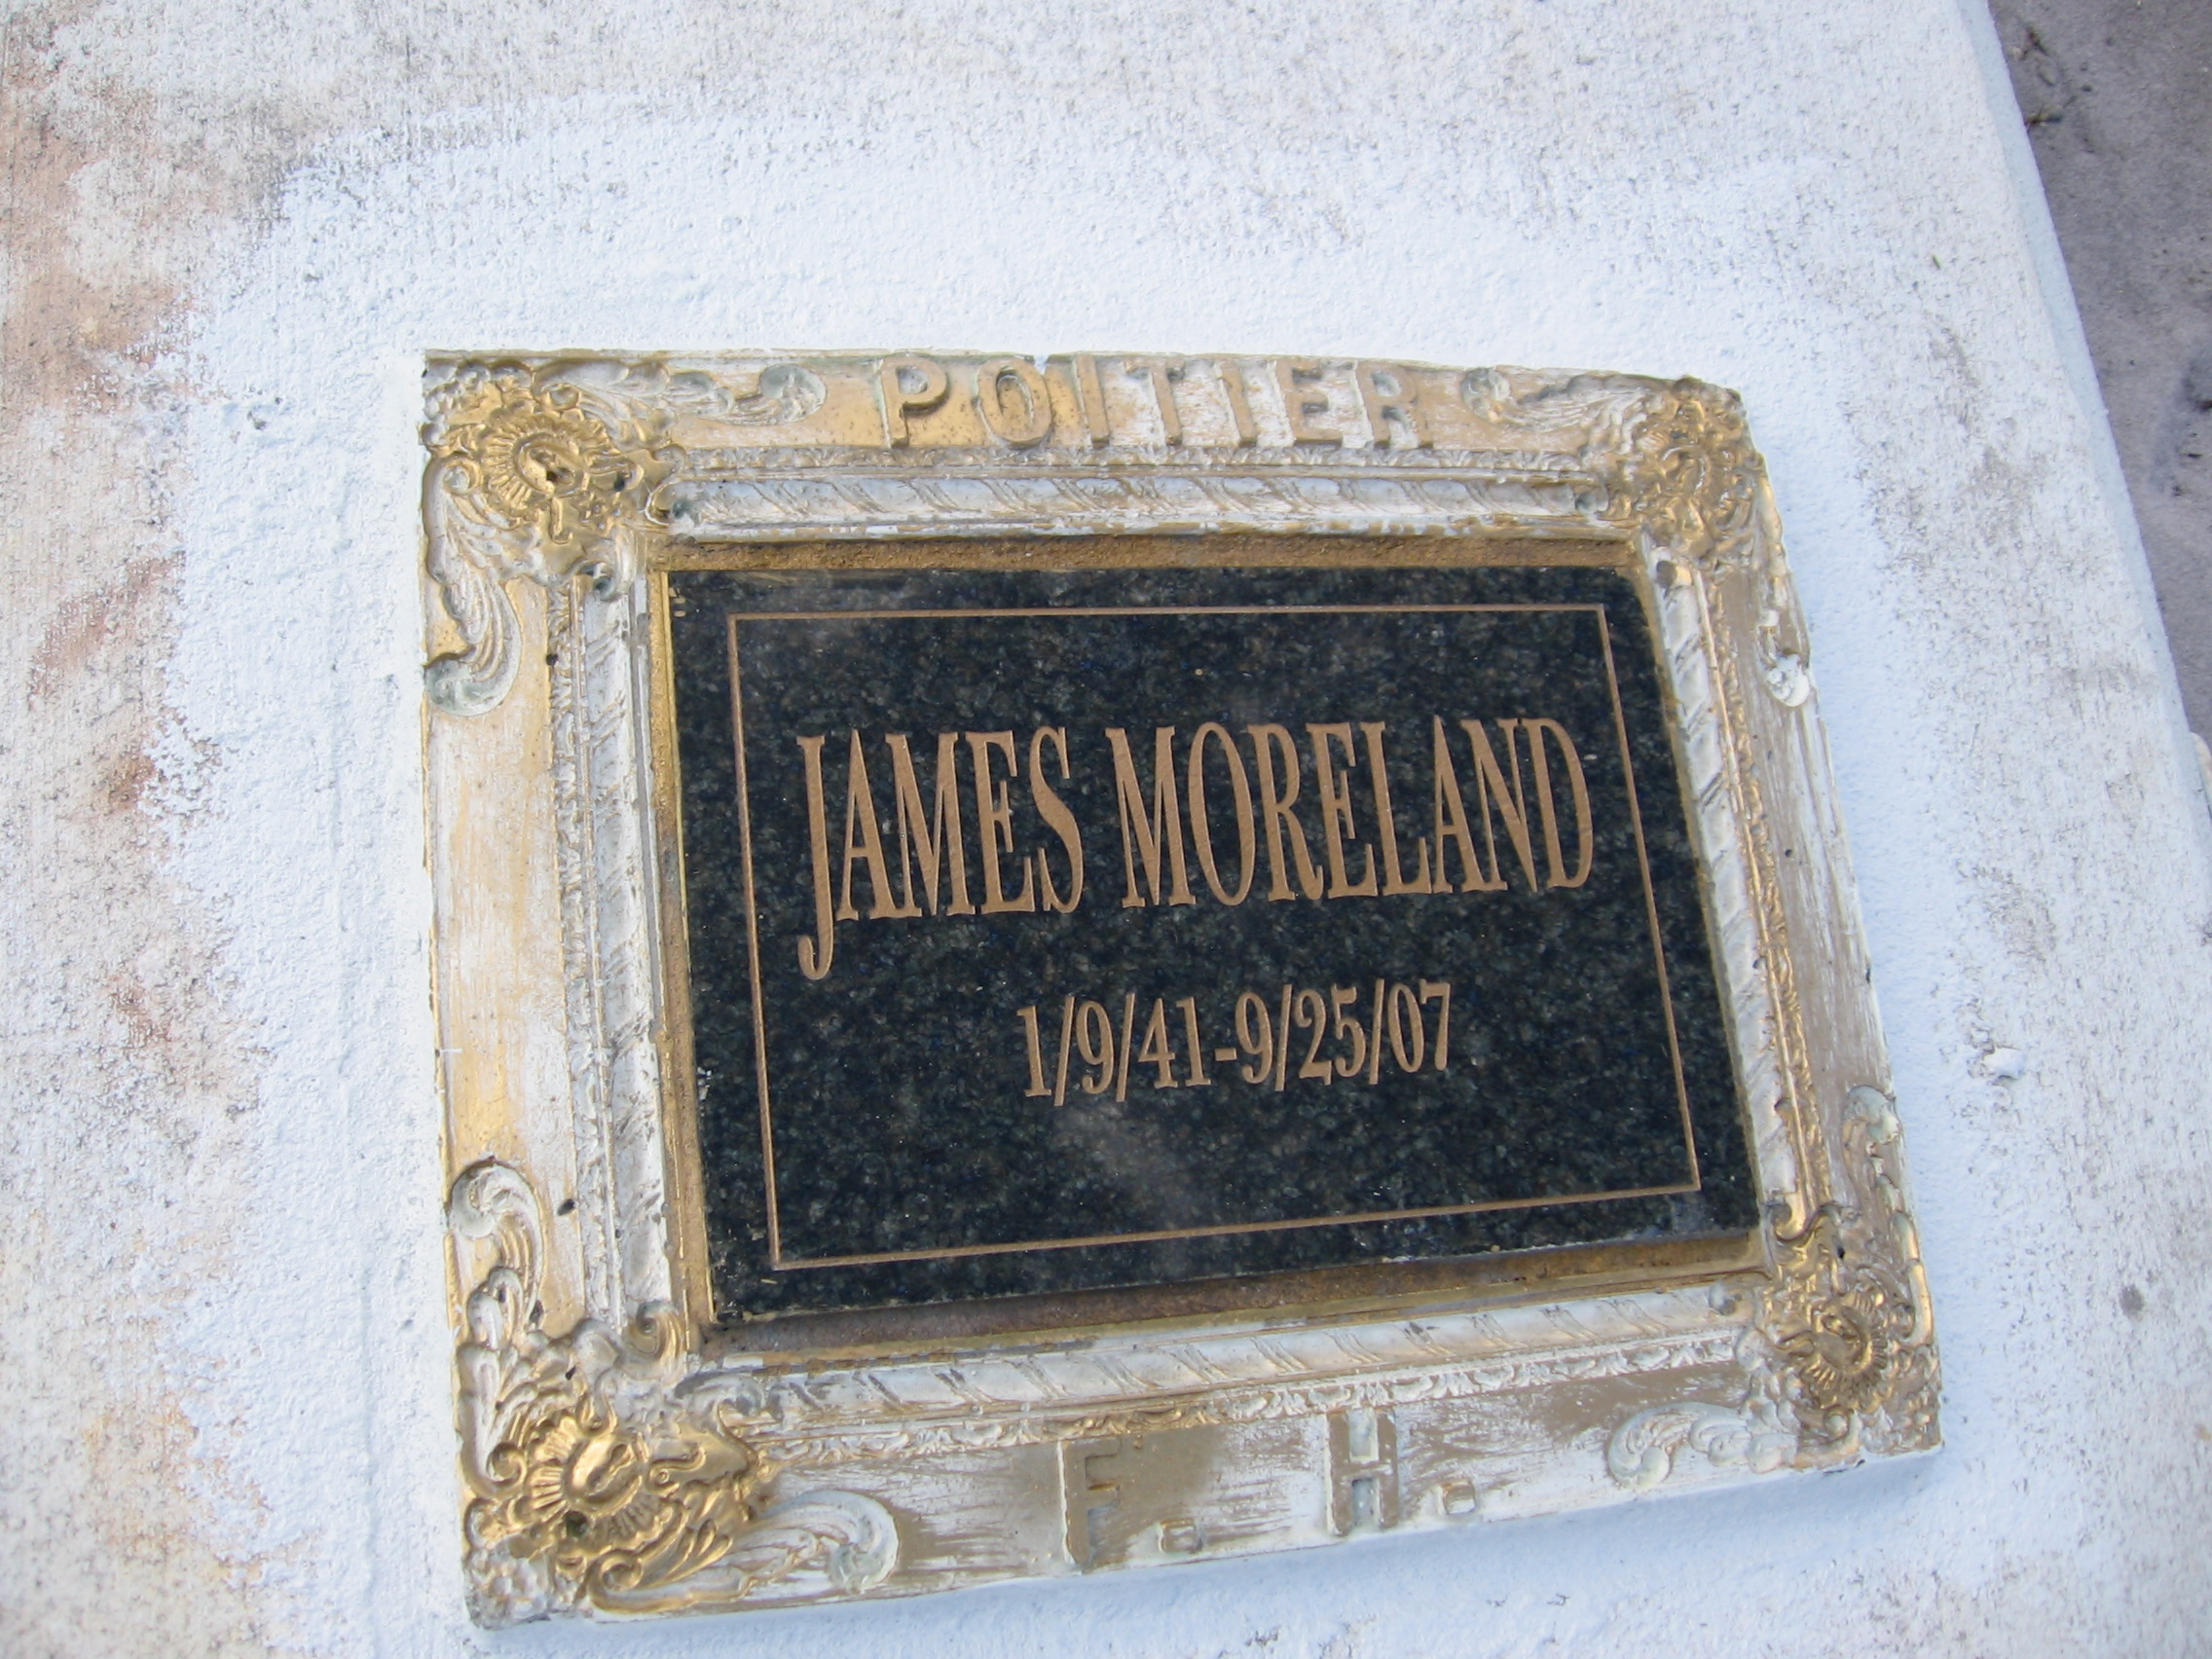 James Moreland